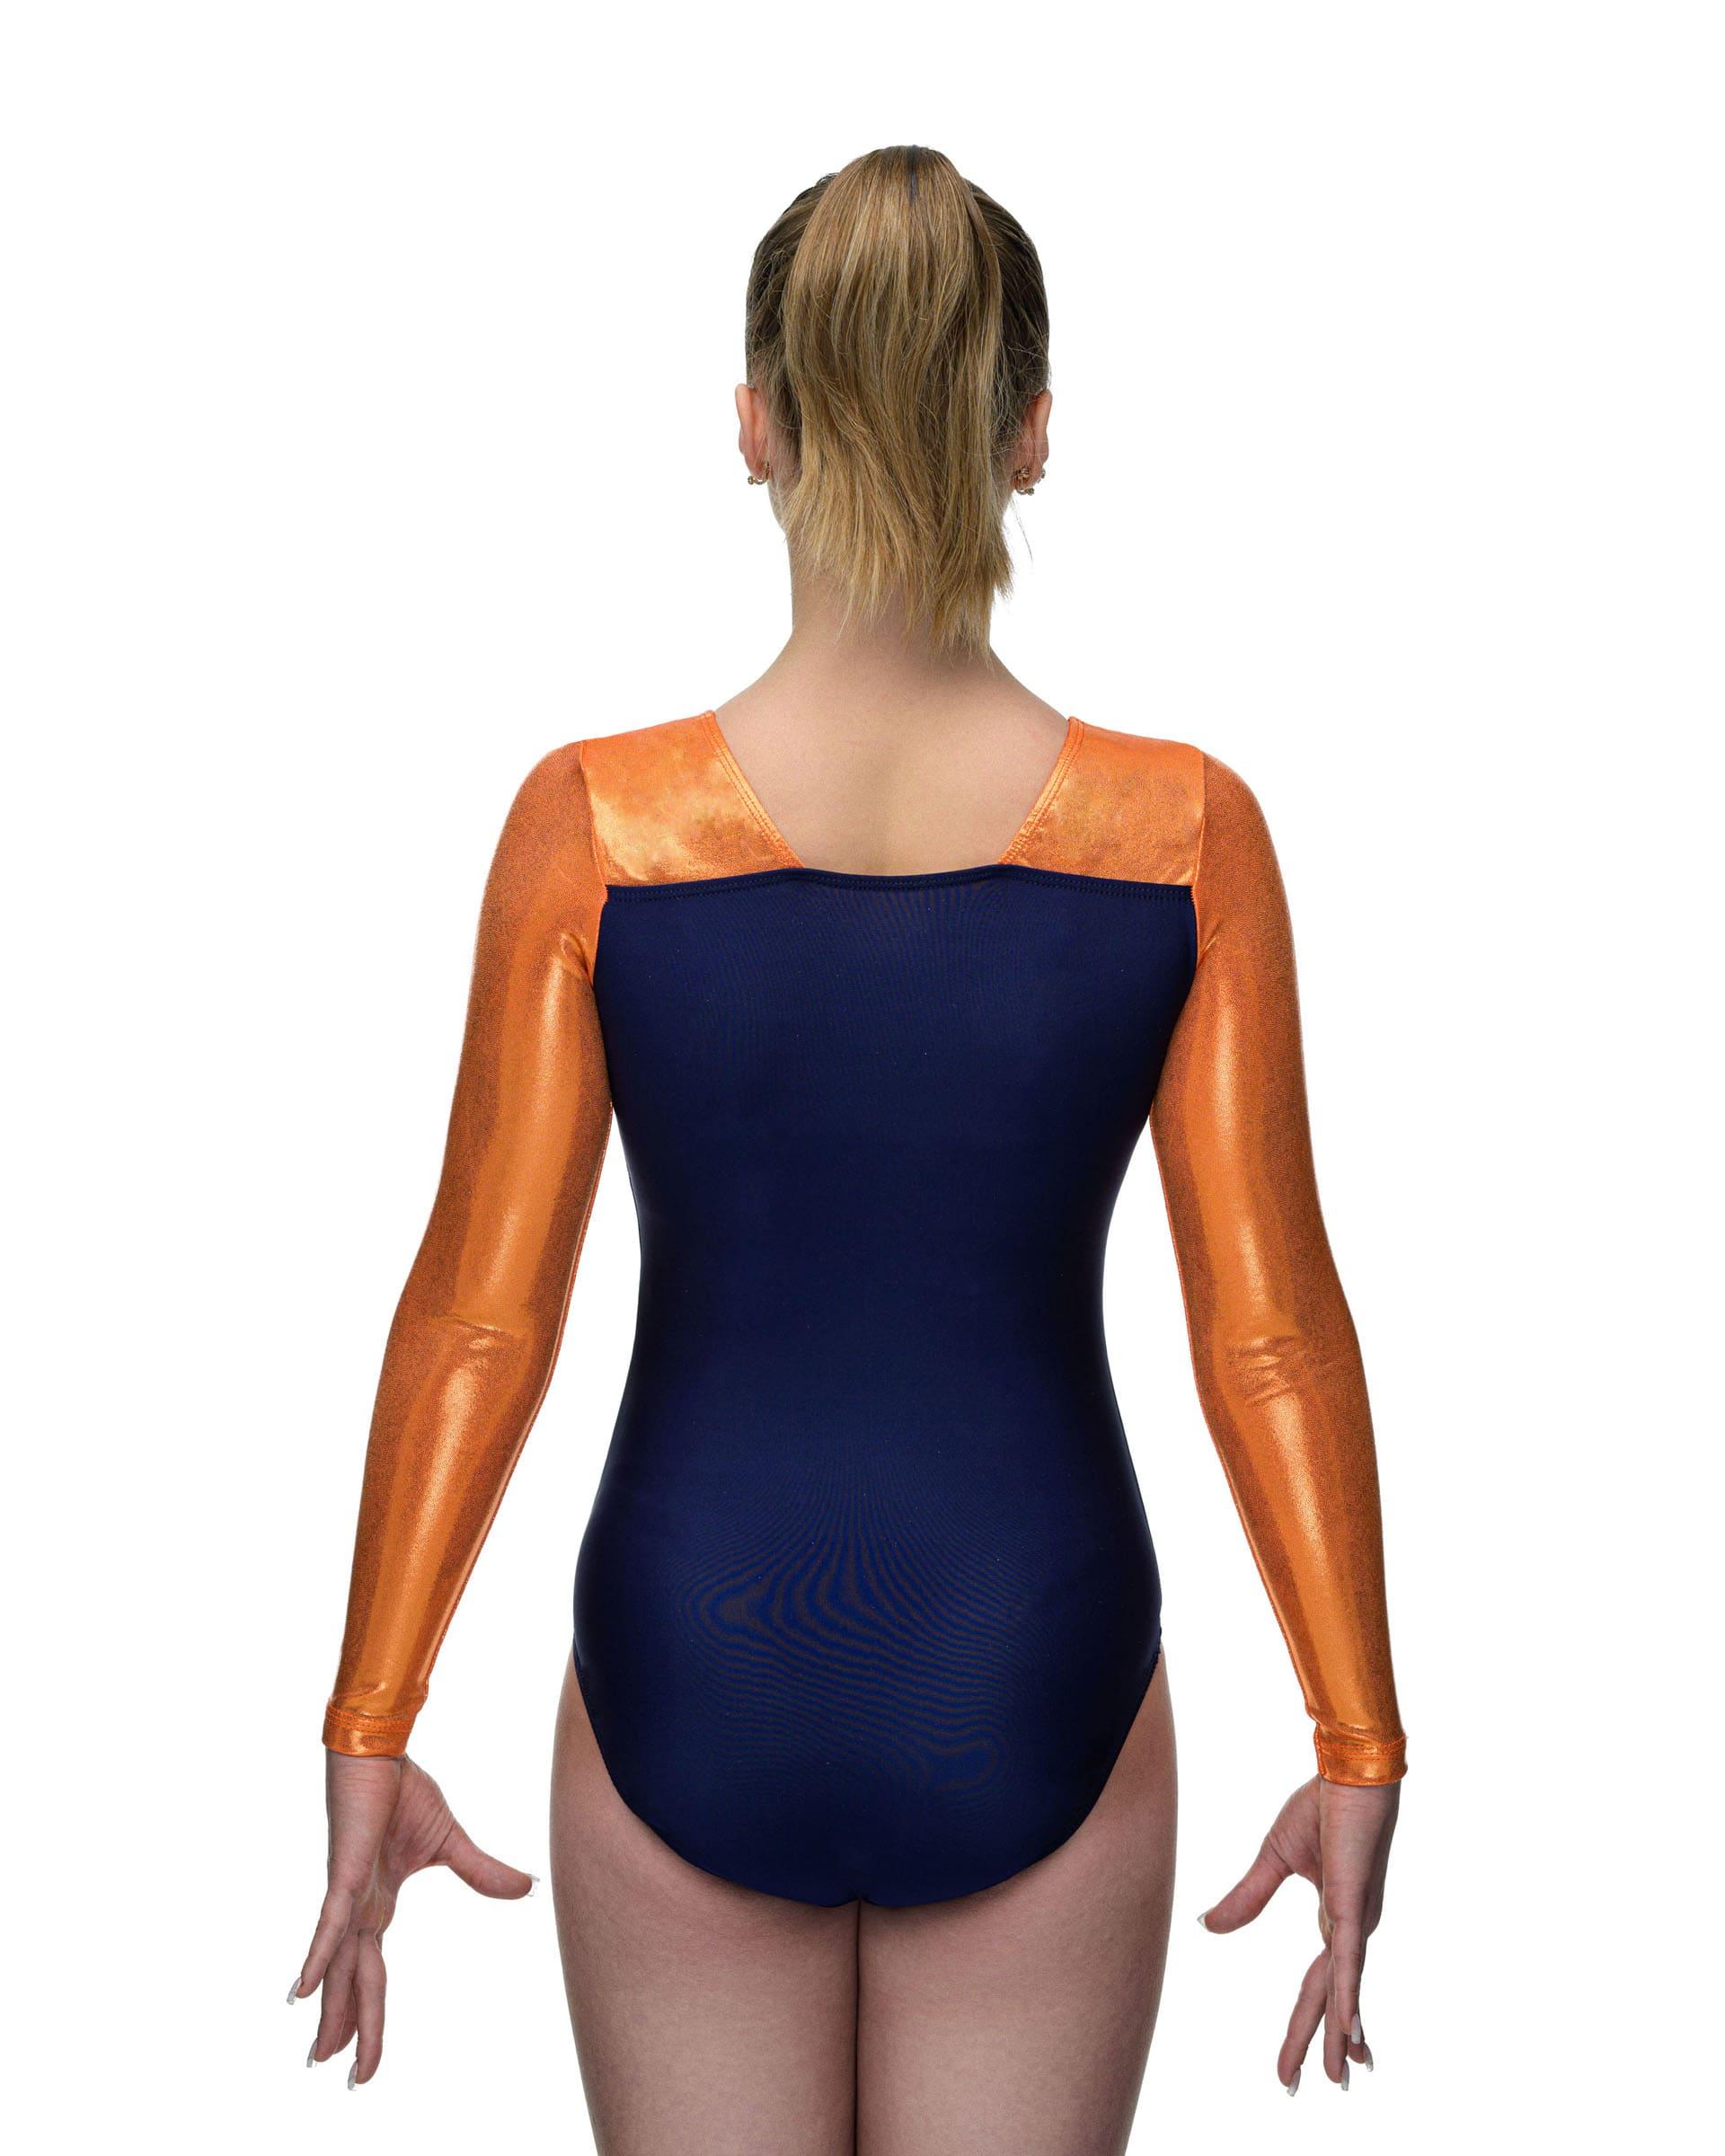 Купальник женский для спортивной гимнастики GK Elite 5983 темно-синий с оранжевым с рукавом